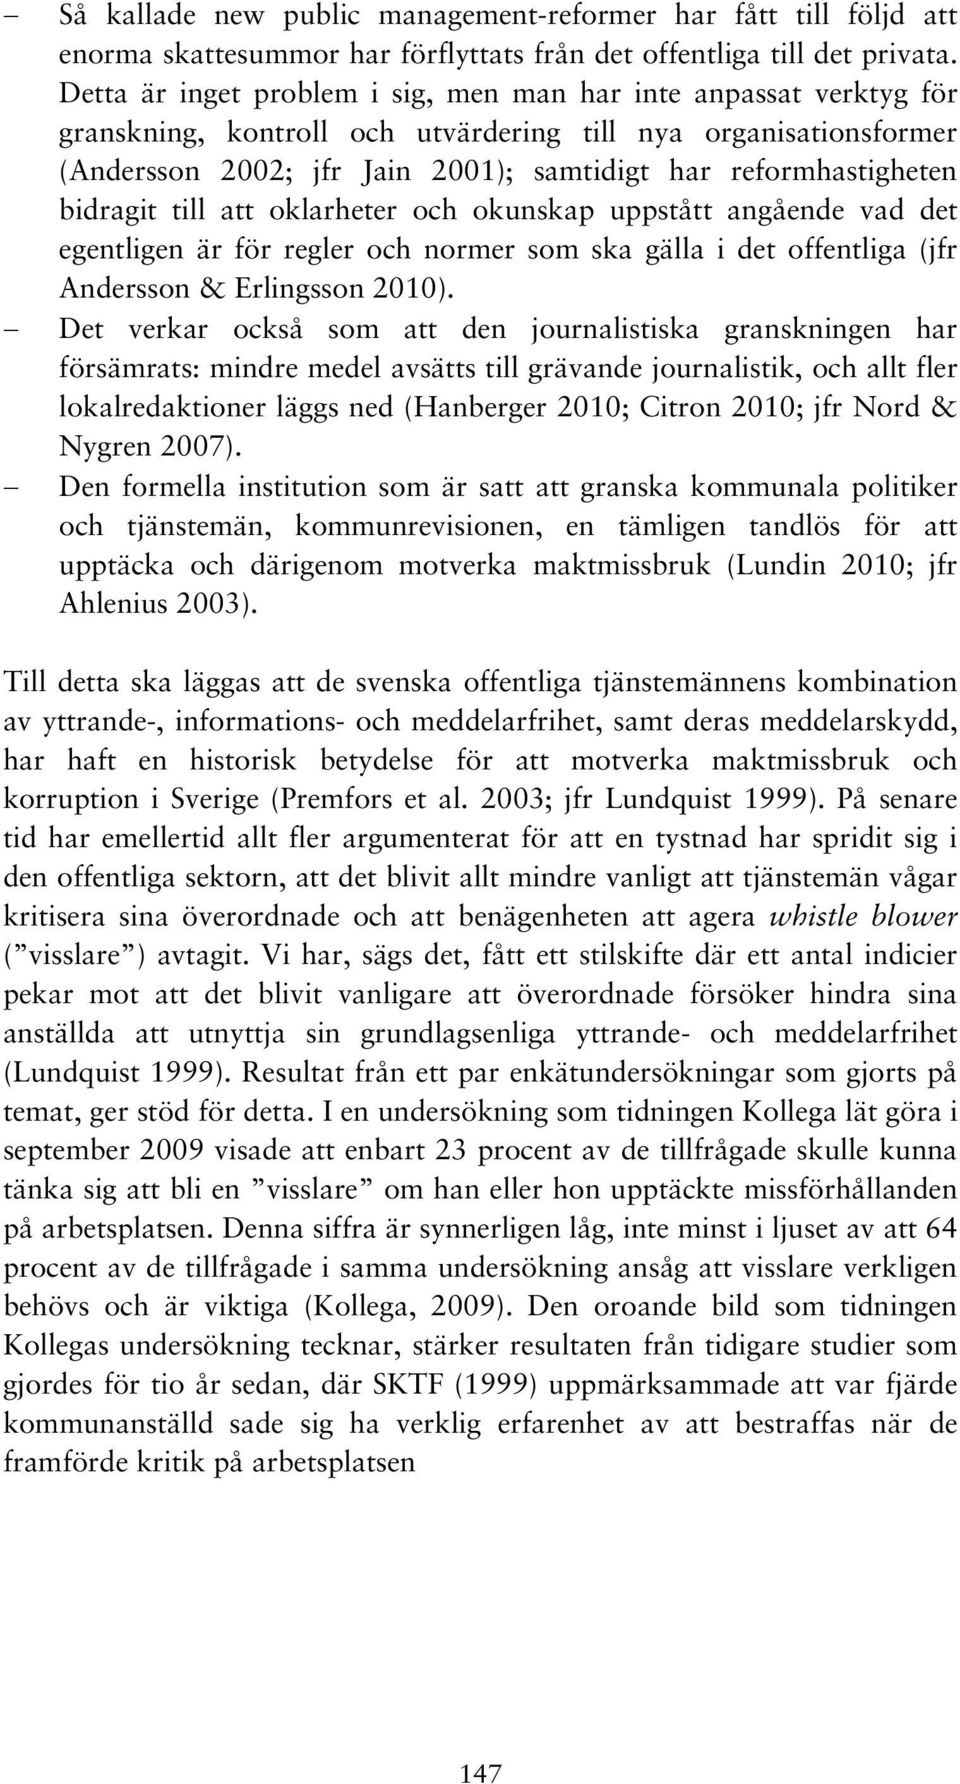 bidragit till att oklarheter och okunskap uppstått angående vad det egentligen är för regler och normer som ska gälla i det offentliga (jfr Andersson & Erlingsson 2010).